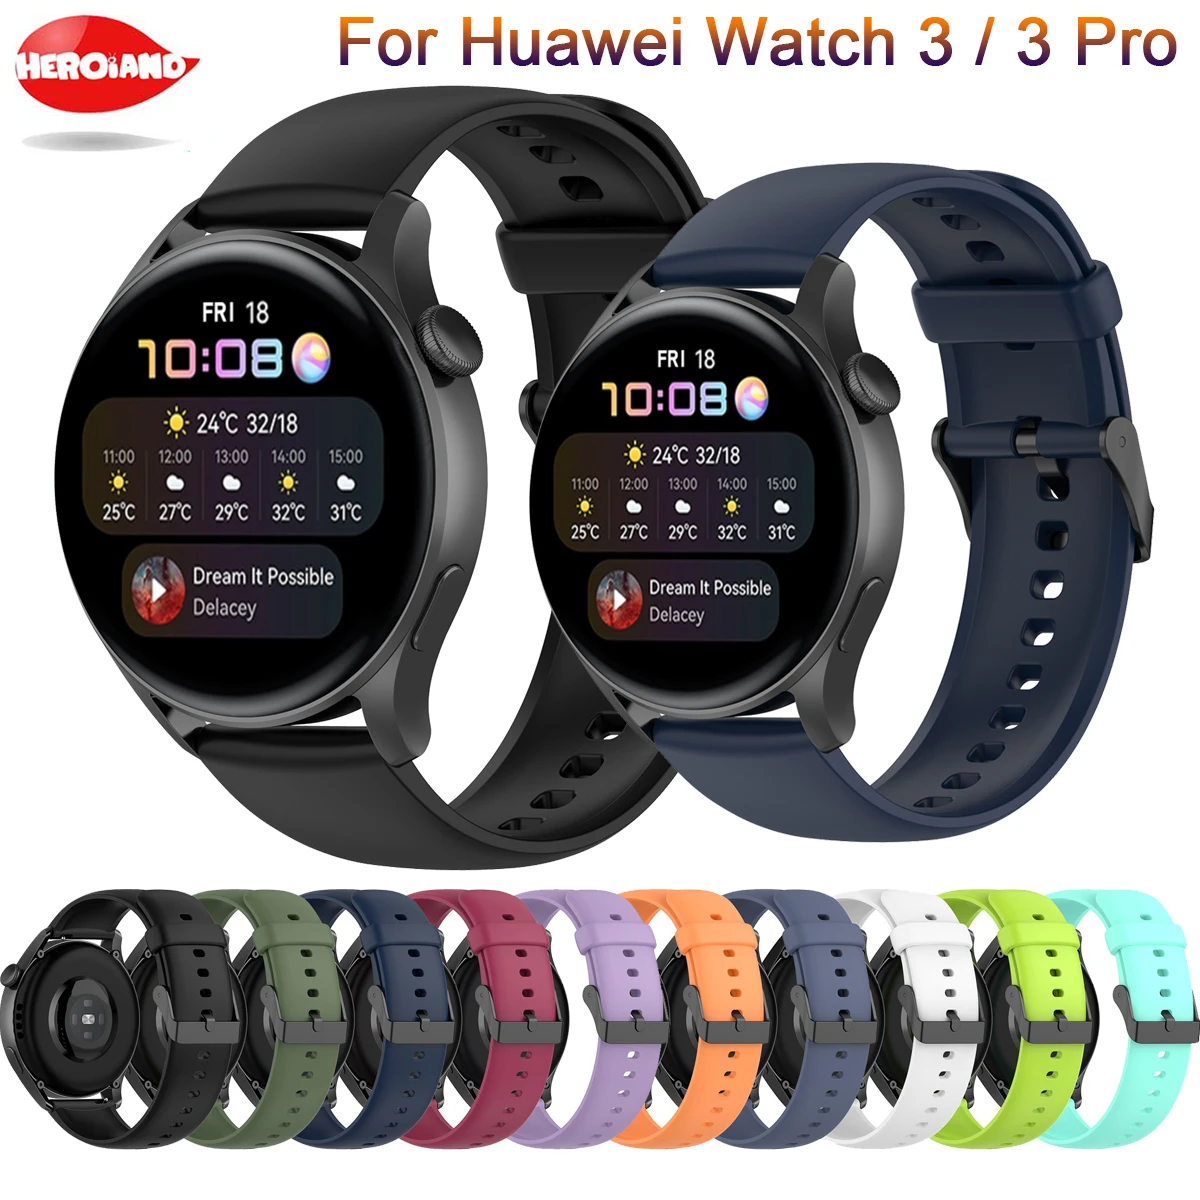 boleto escritura martillo Pulseras para Samsung Galaxy Watch, 46mm Gear S3 Classic/Frontier Galaxy  Watch 3, 45mm, correa para Huawei Watch 3 / 3 Pro|Accesorios inteligentes|  - AliExpress